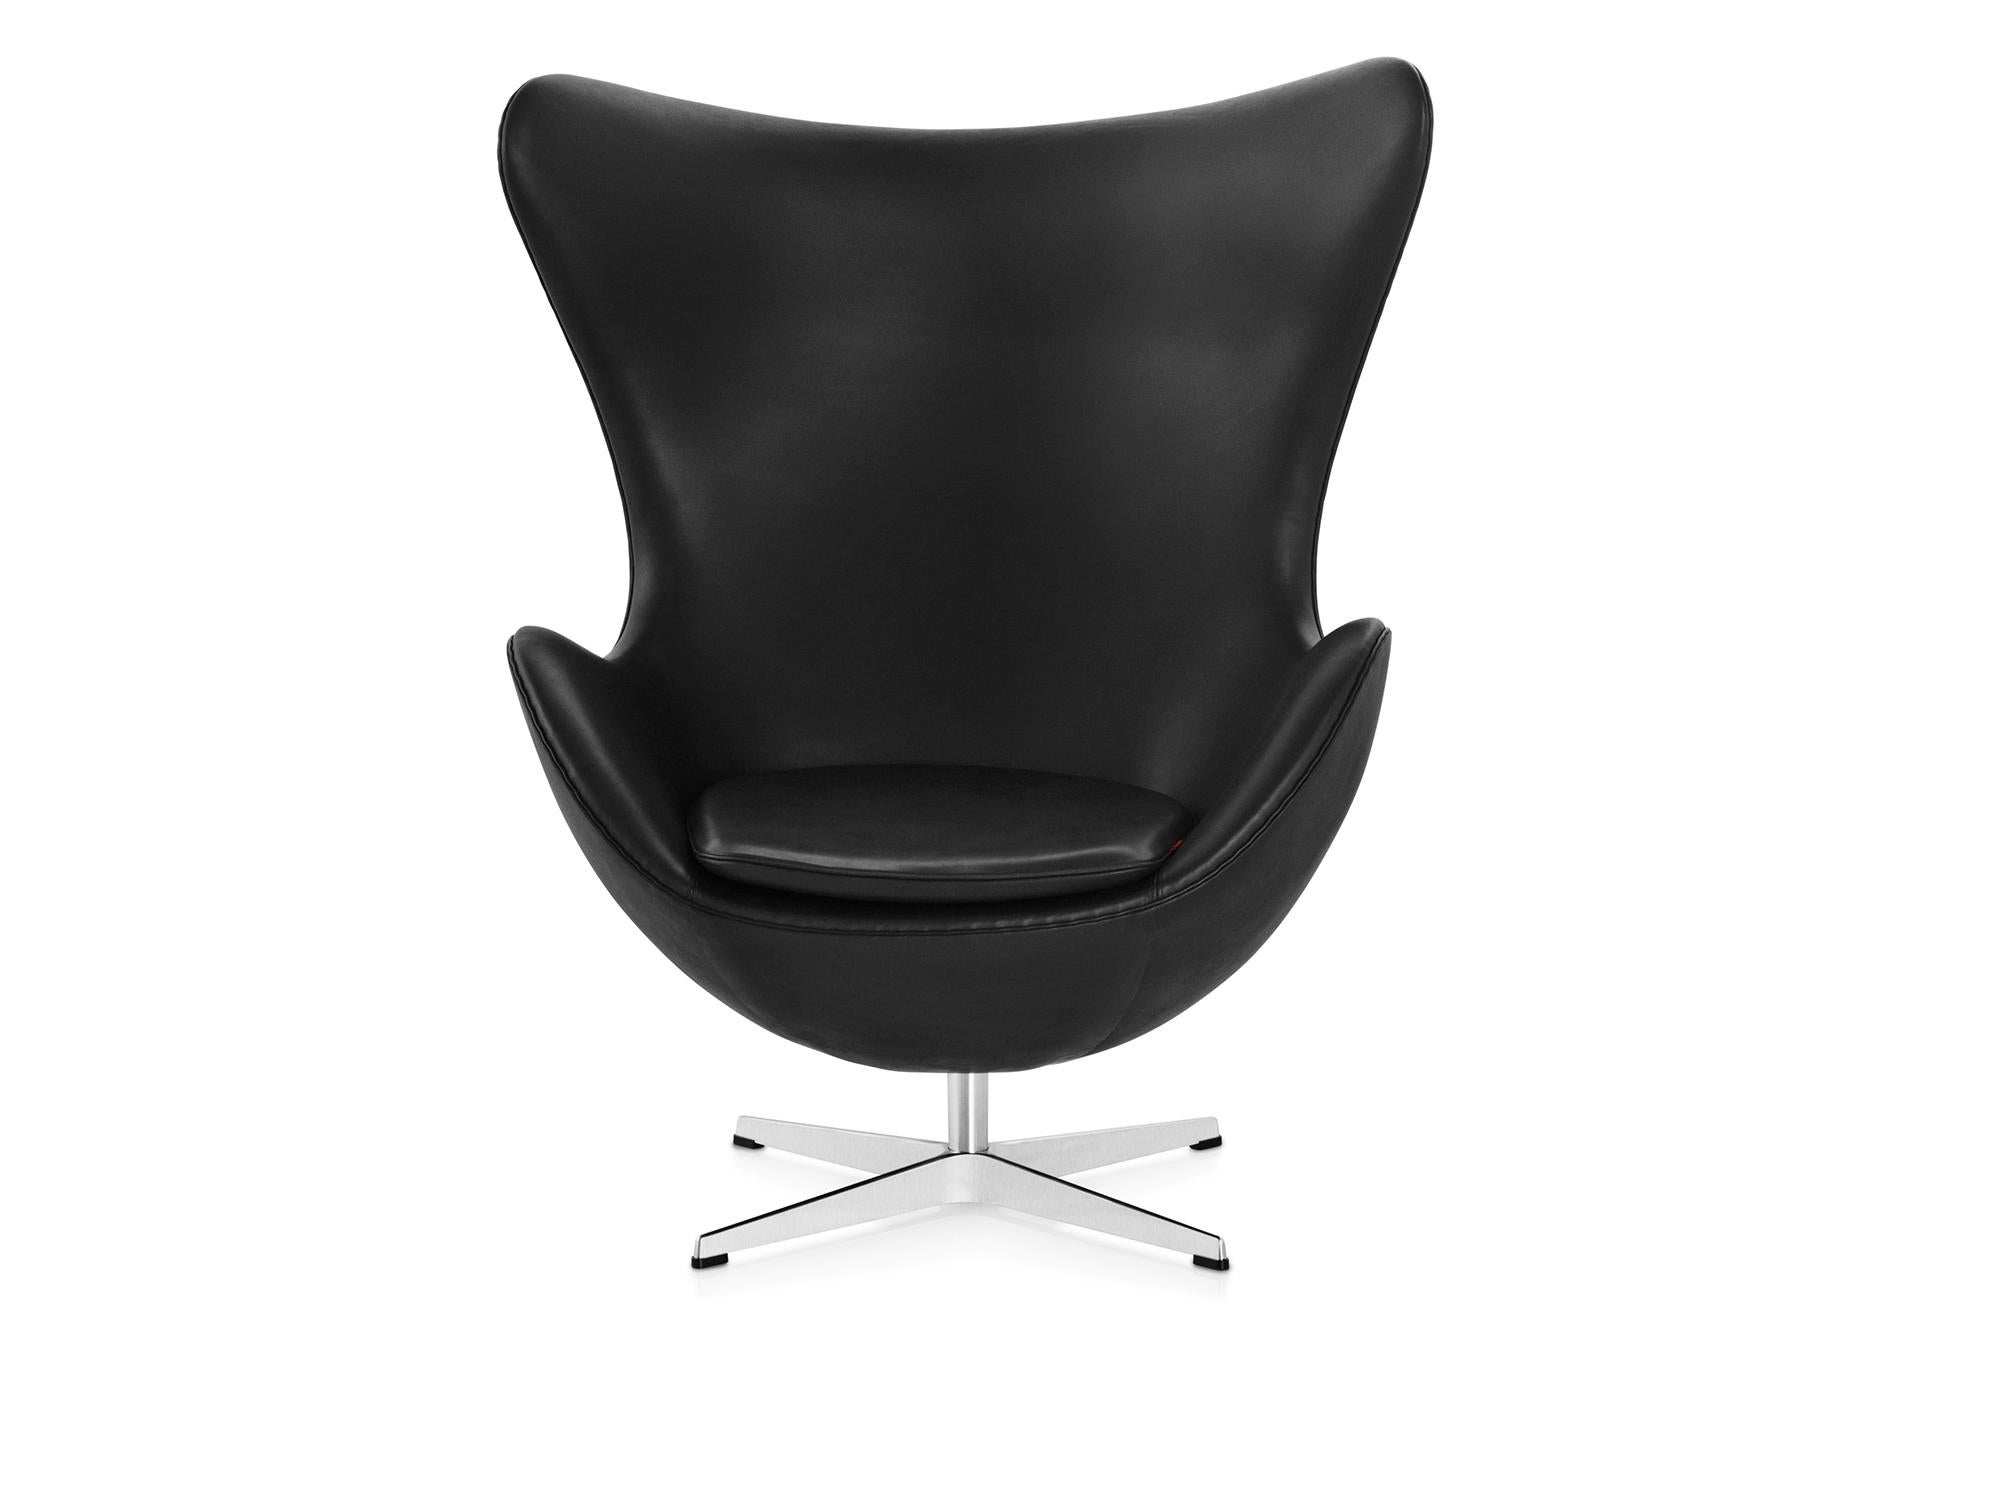 Arne Jacobsen 'Egg' Chair for Fritz Hansen in Leather Upholstery (Cat. 5) For Sale 6